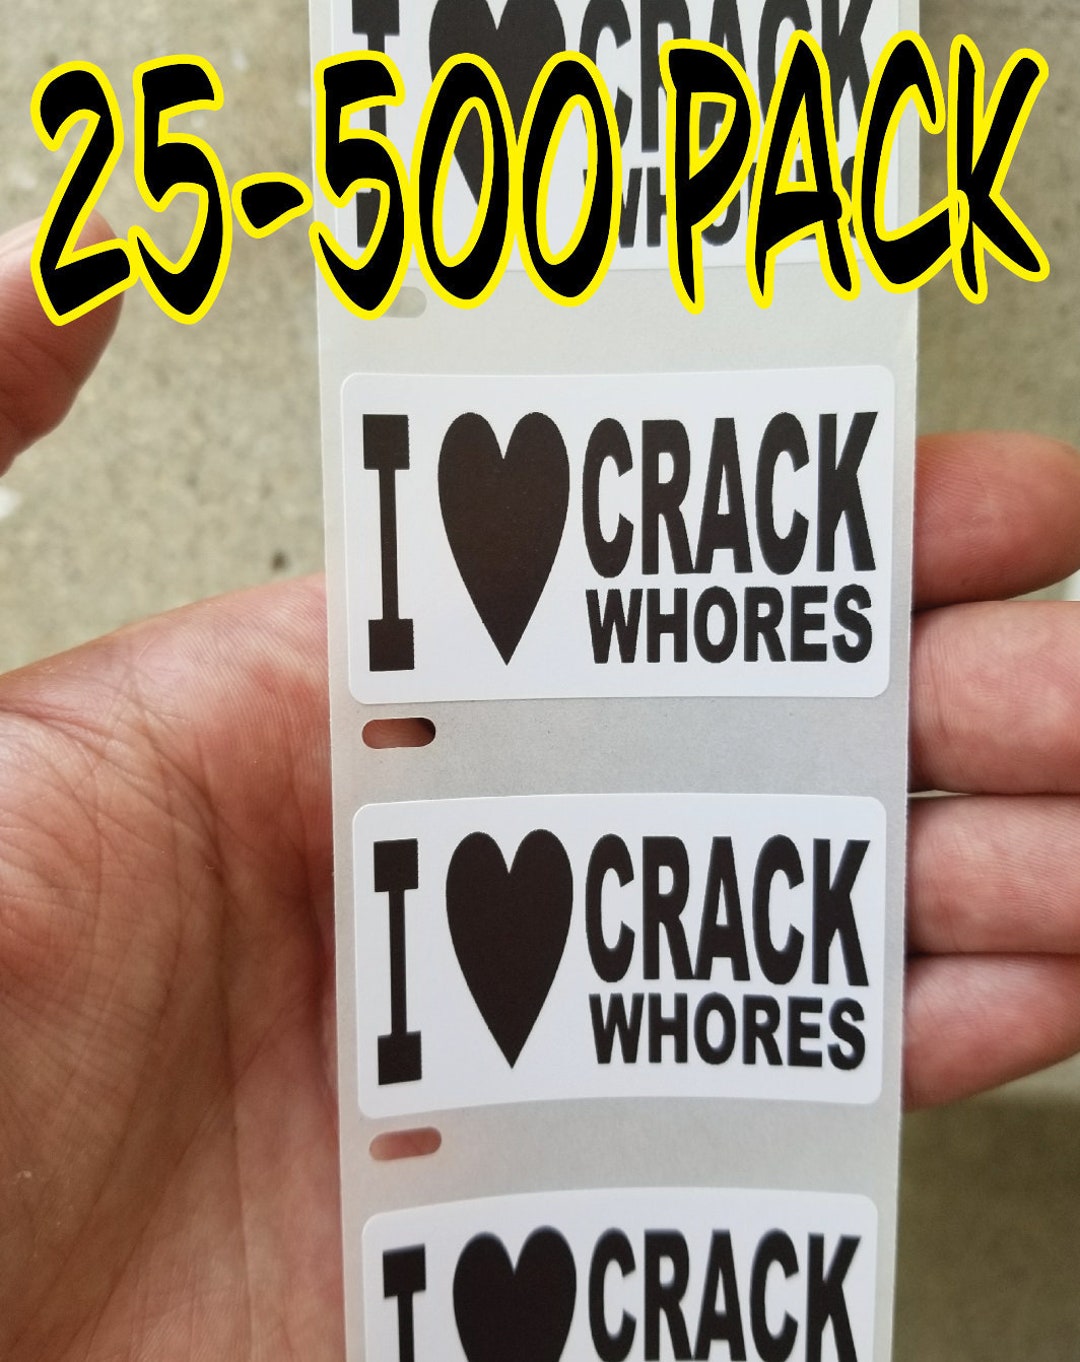 I Love Crack Whores Stickers 25 500 Pack Gag Sticker Joke Decal Hard Hat Label Like Hooker Slut